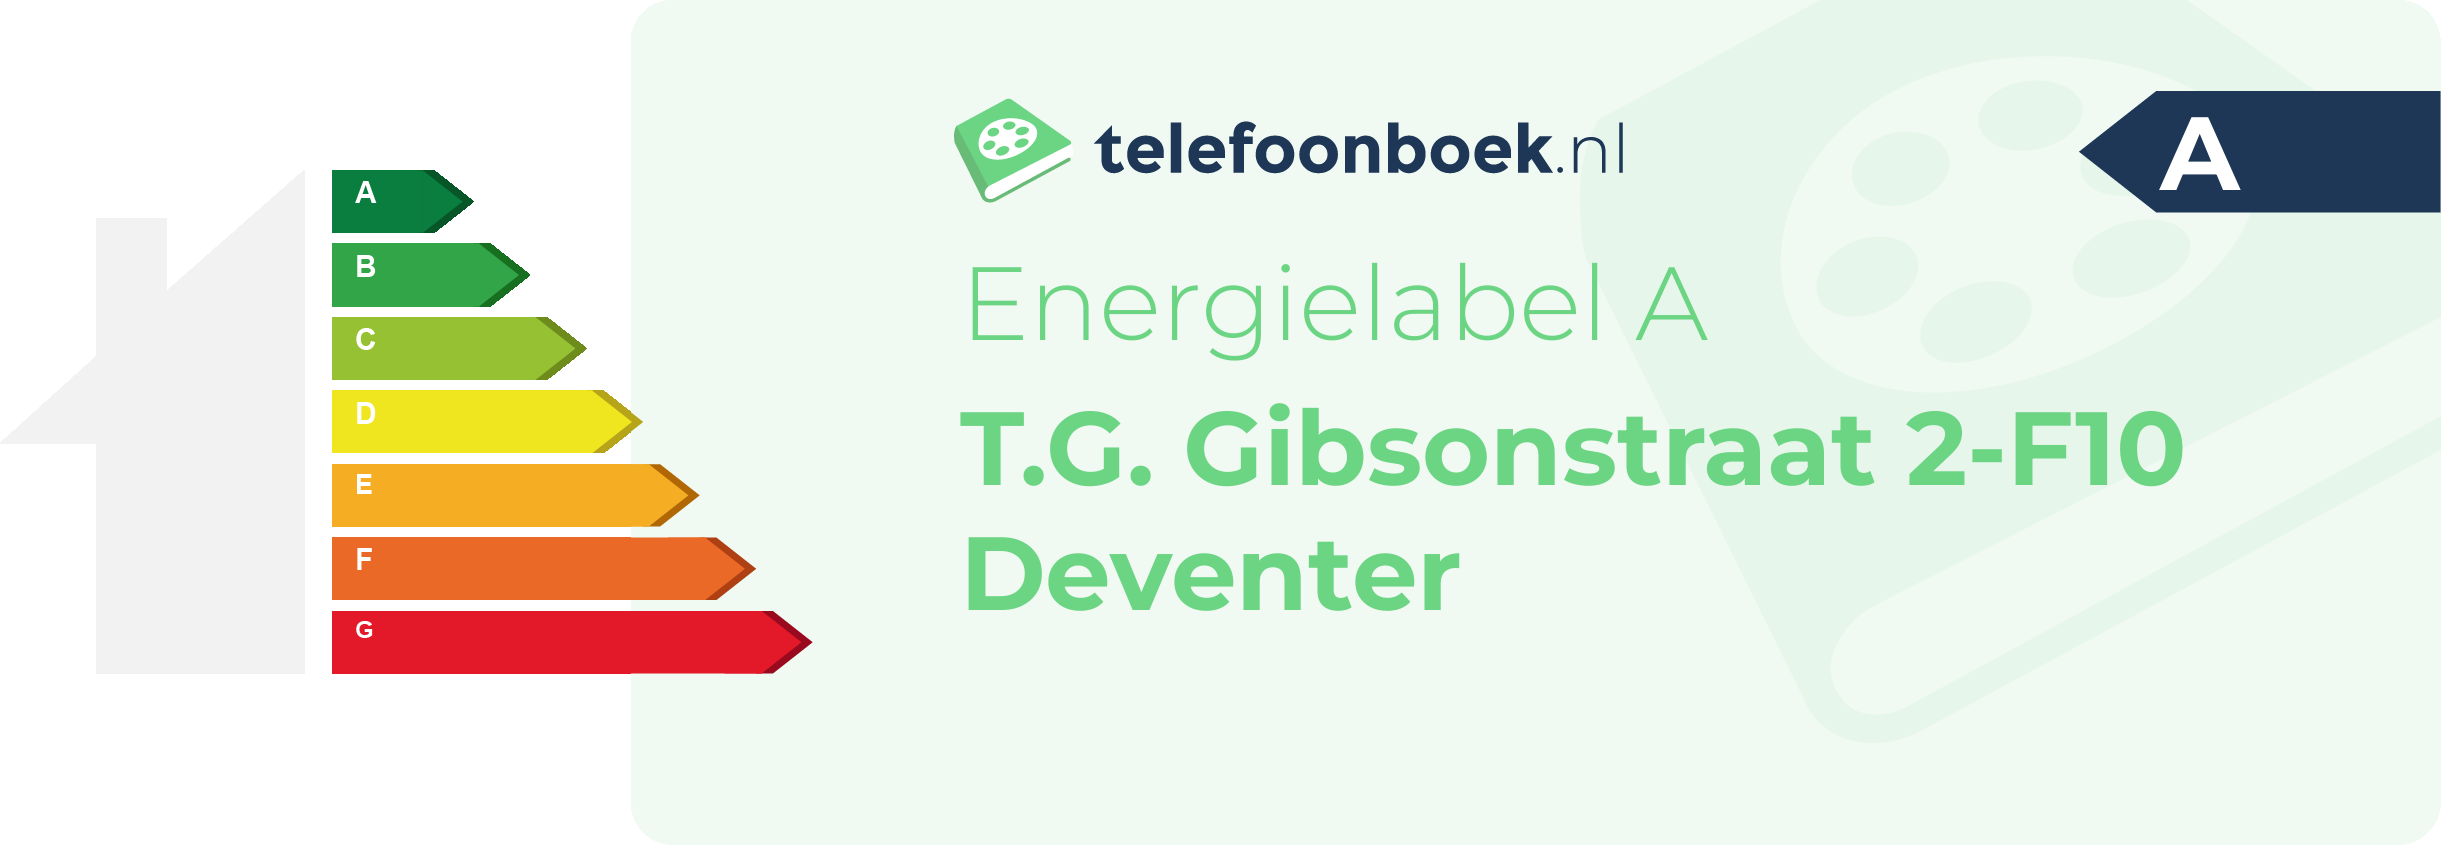 Energielabel T.G. Gibsonstraat 2-F10 Deventer